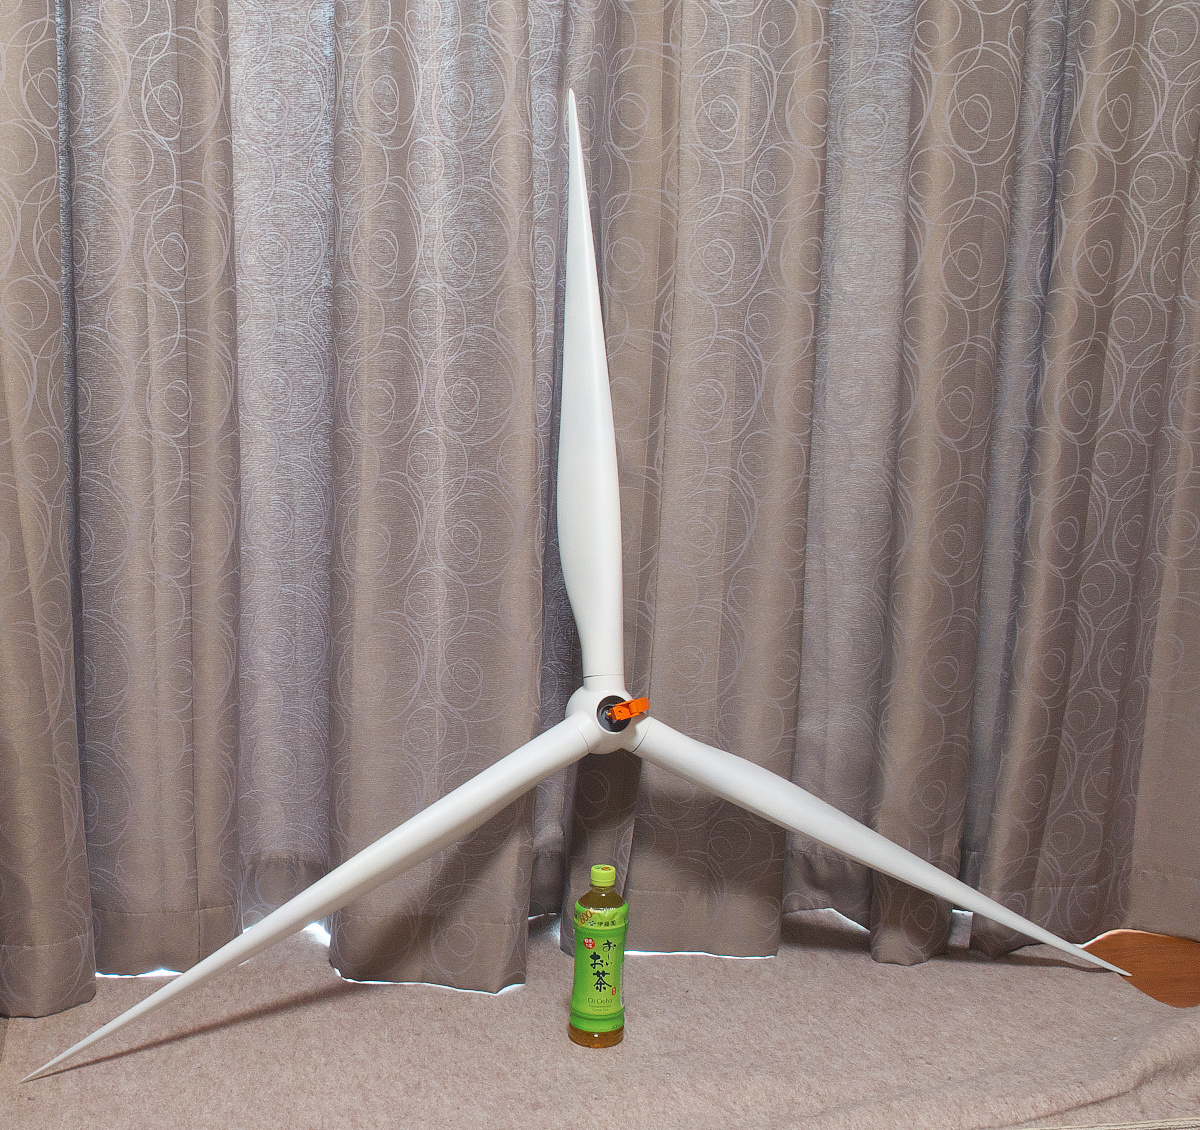 1/50スケール　クレーン模型の吊り荷用　風力発電　風車のローター windturbine blade rotor 1:50 scale_500のペットボトルは大きさ比較用です。